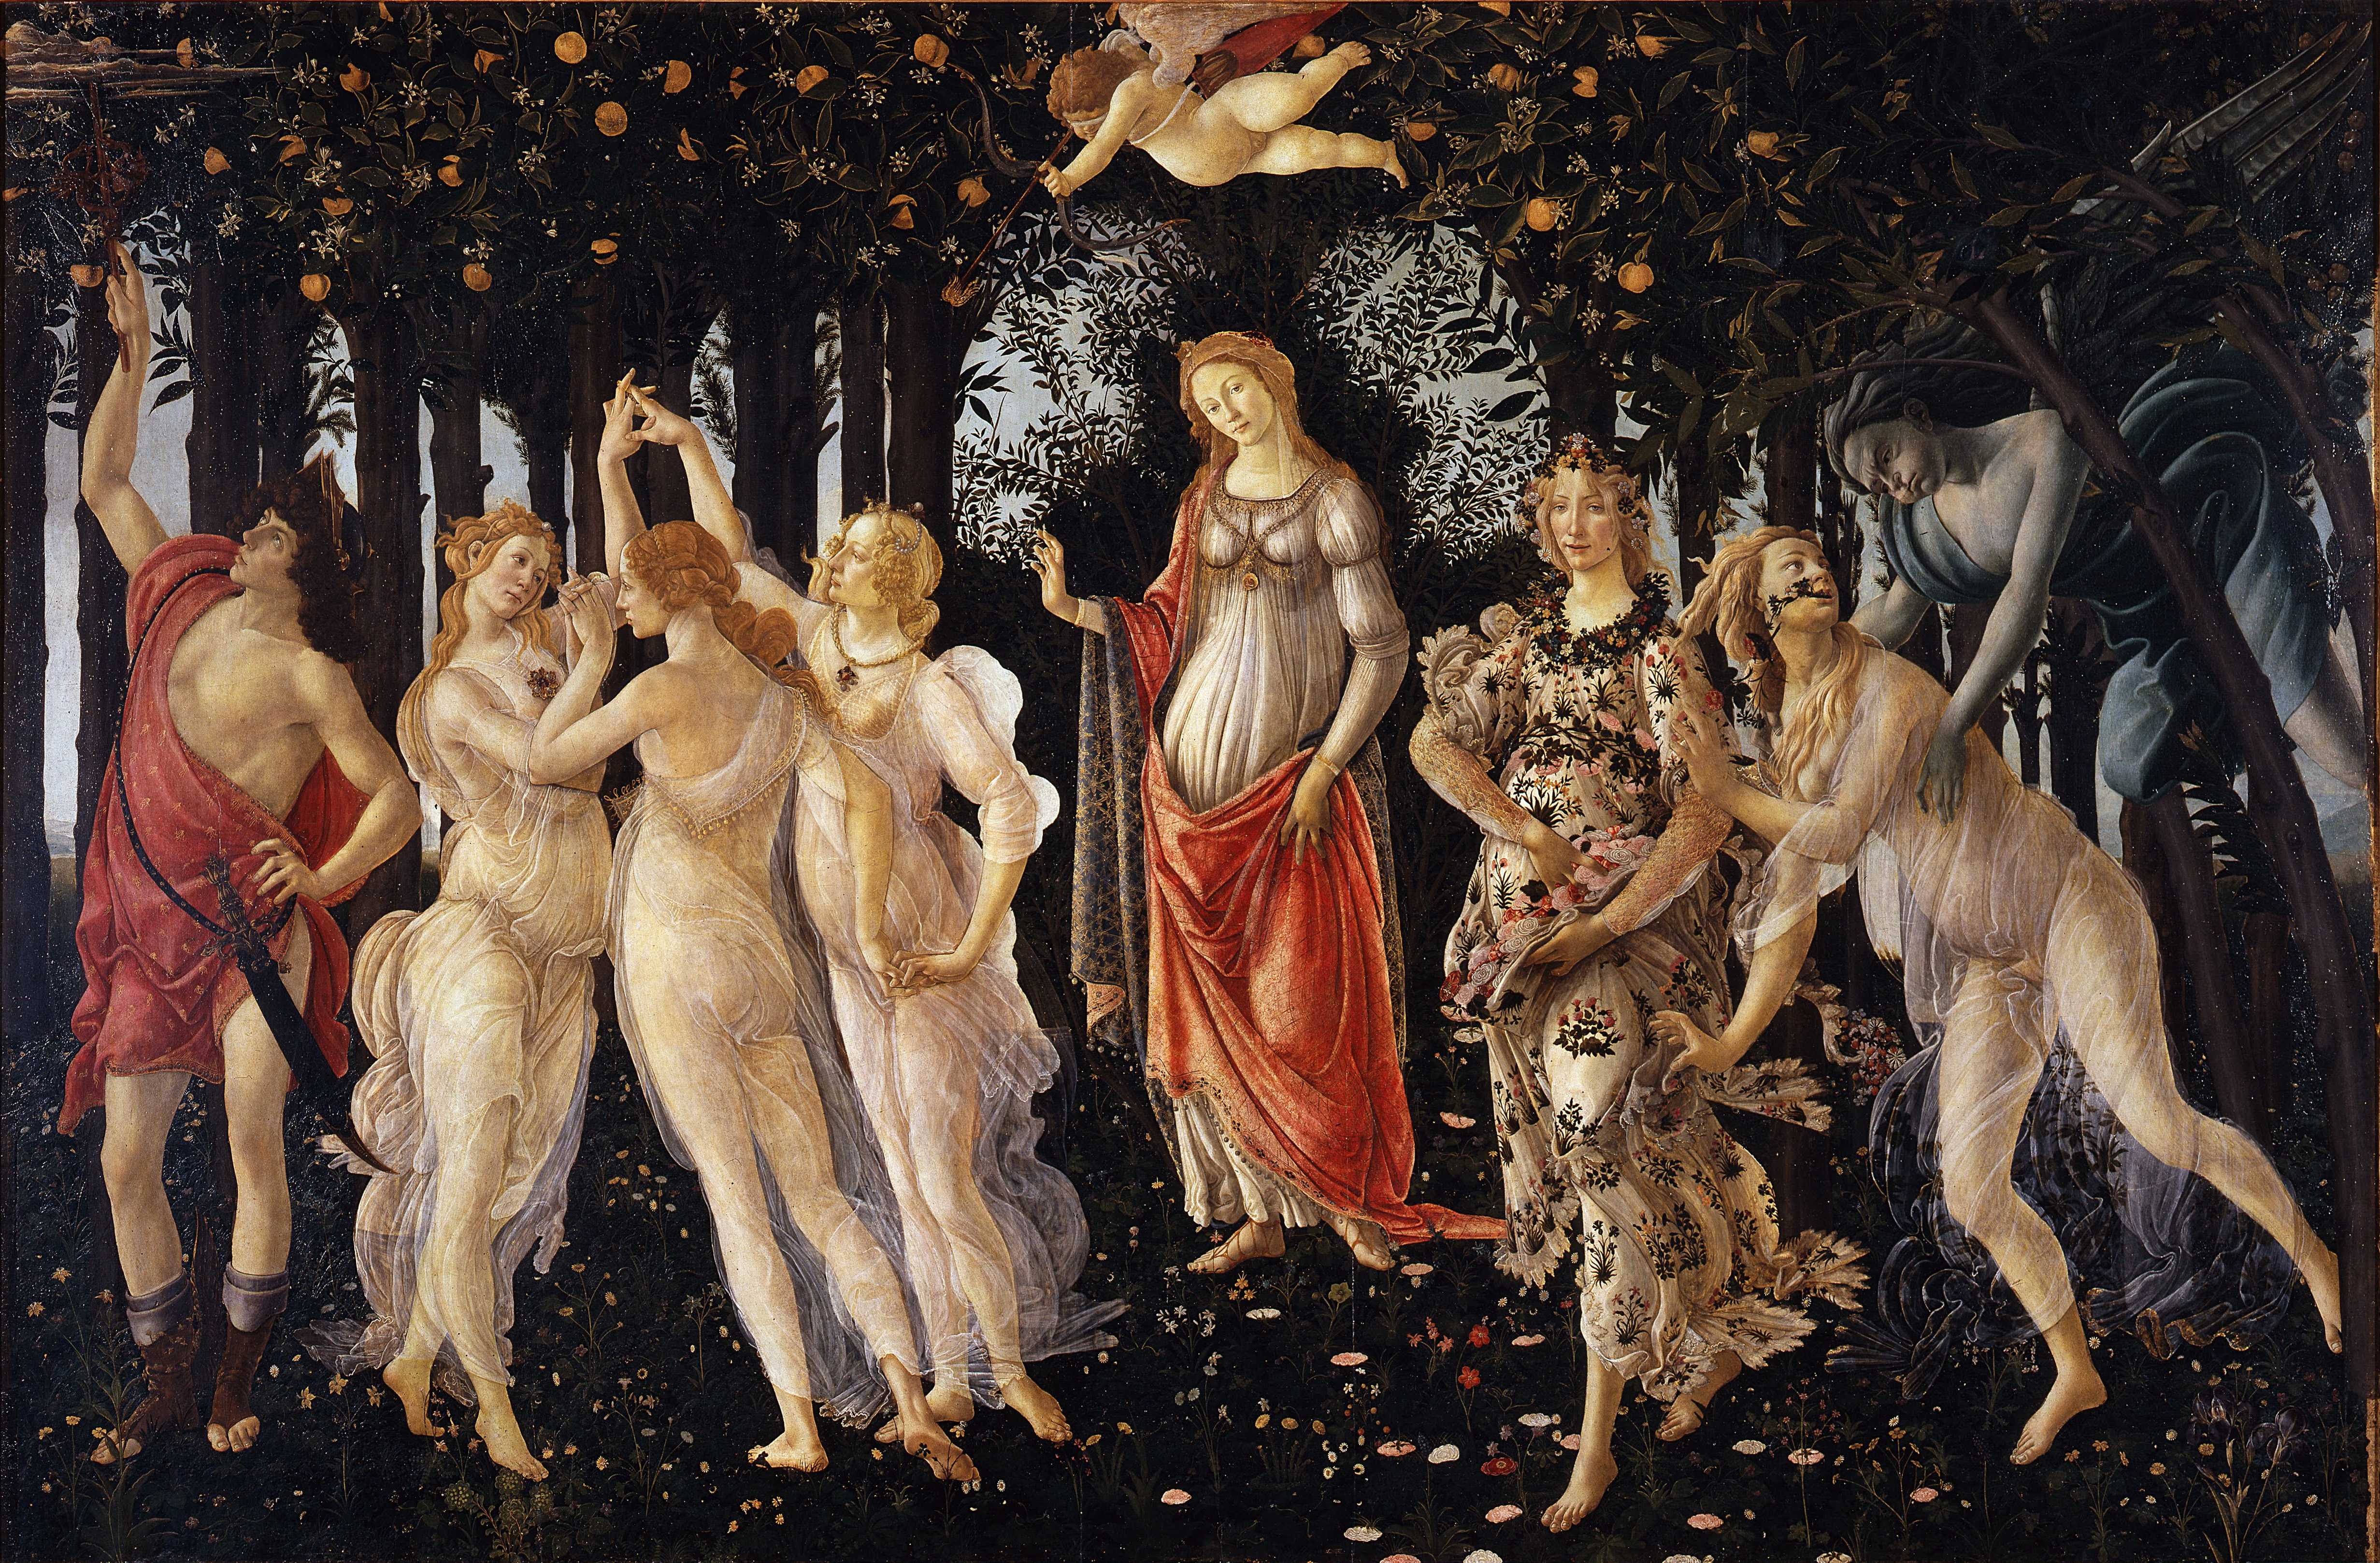 By Sandro Botticelli - http://www.googleartproject.com/collection/uffizi-gallery/artwork/la-primavera-spring-botticelli-filipepi/331460/, Public Domain, https://commons.wikimedia.org/w/index.php?curid=7963136